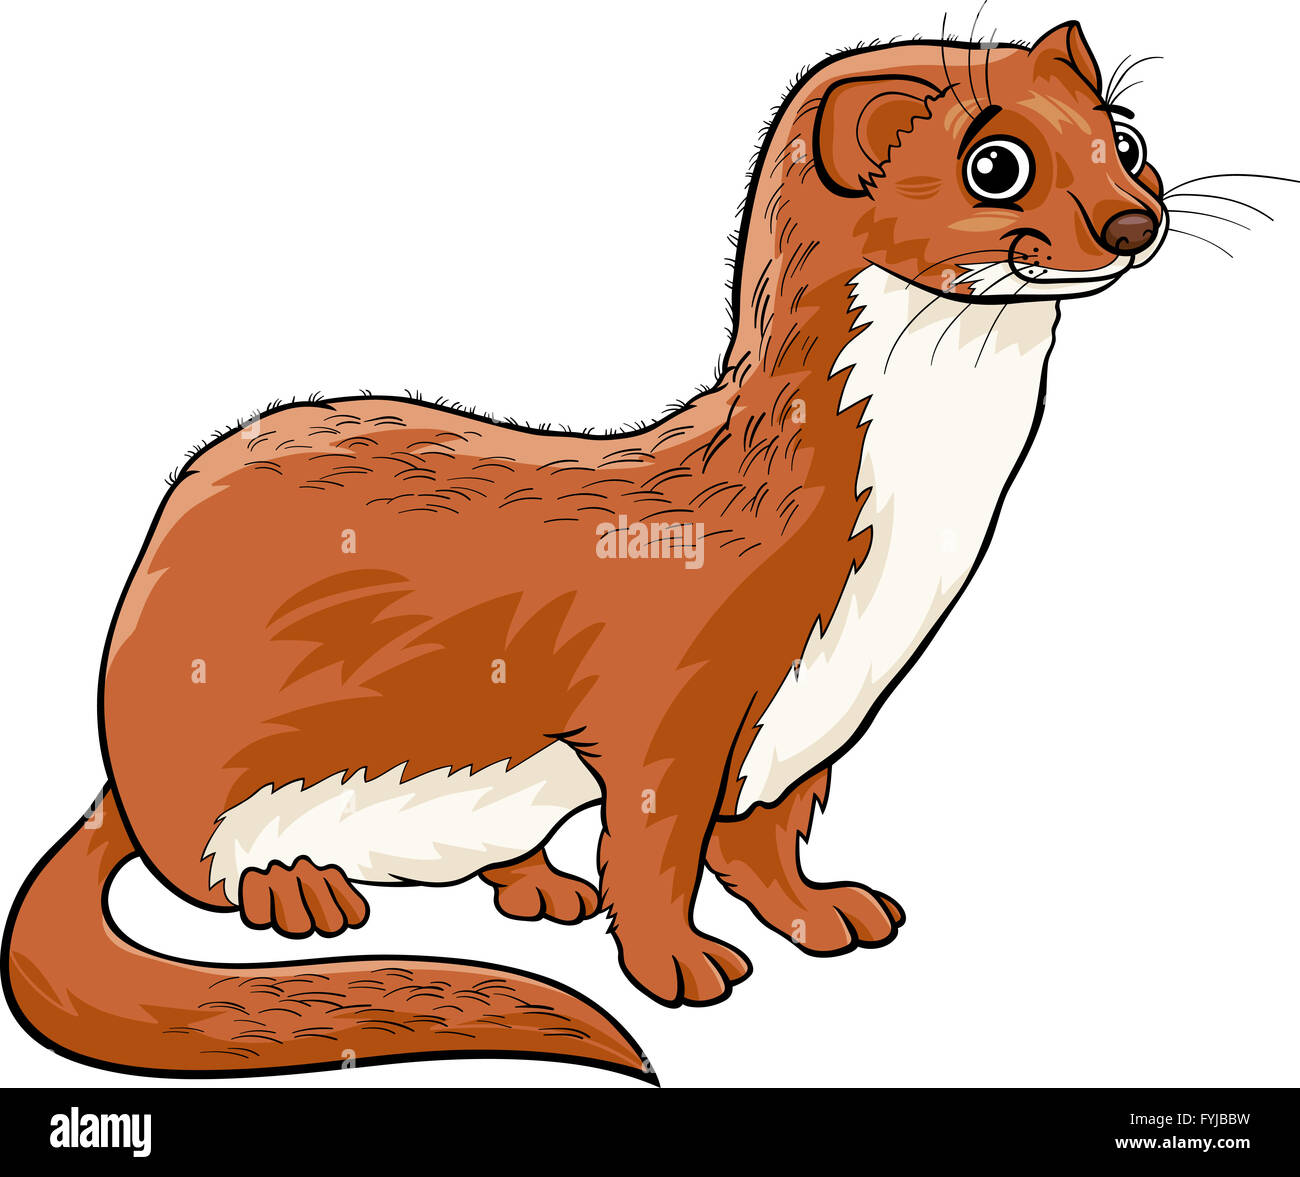 weasel animal cartoon illustration Stock Photo